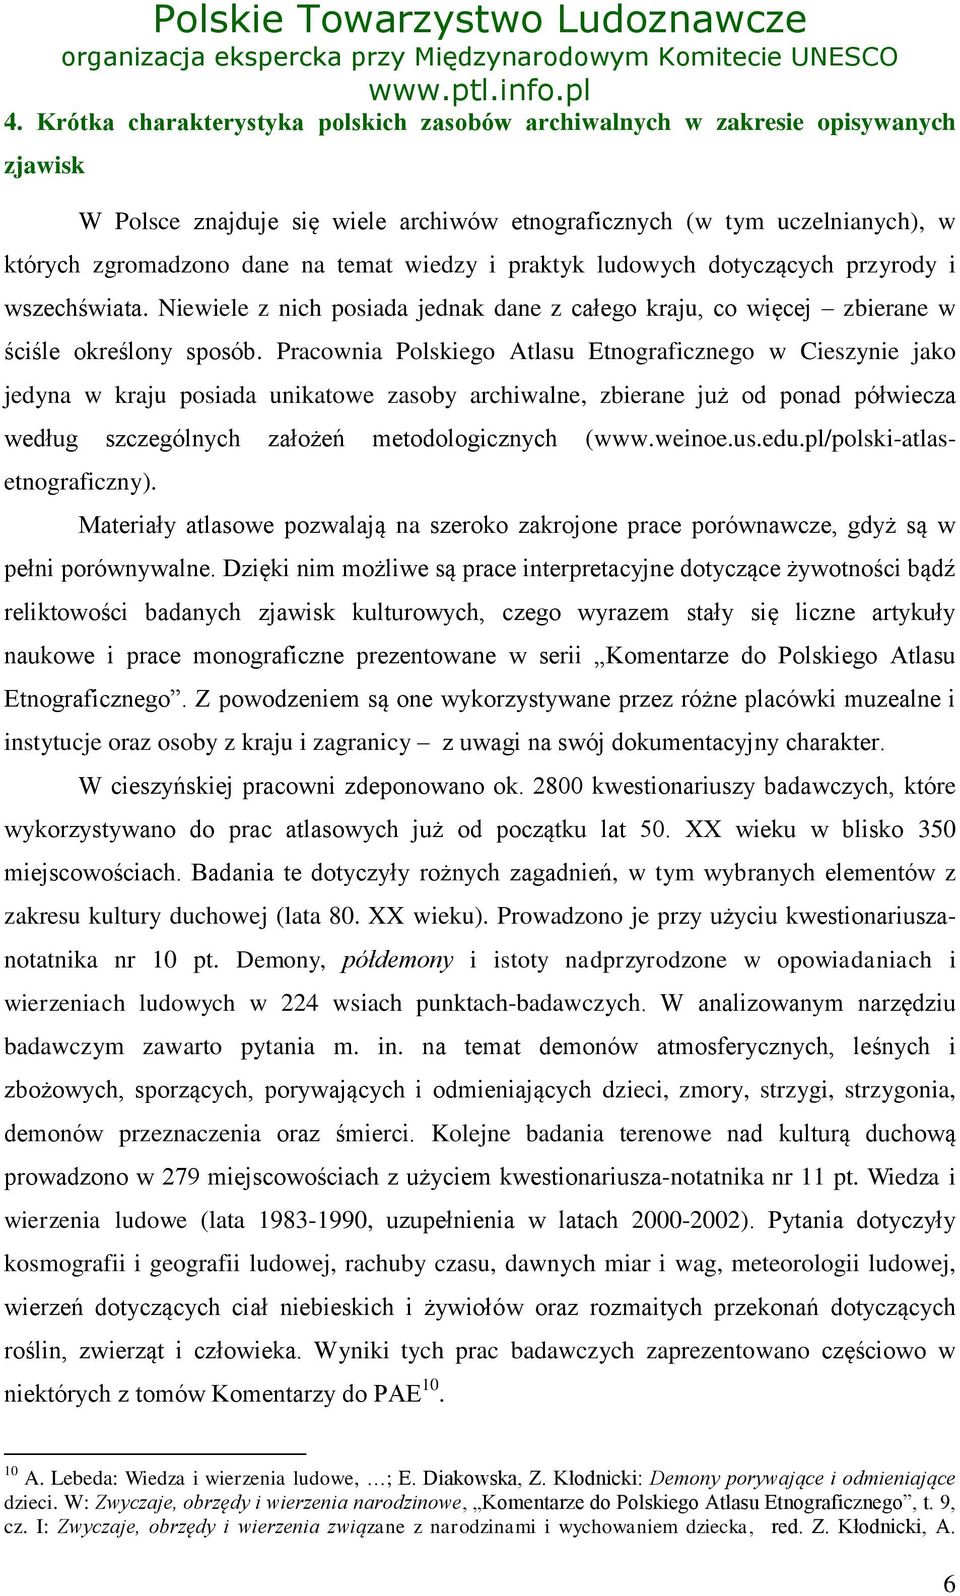 Pracownia Polskiego Atlasu Etnograficznego w Cieszynie jako jedyna w kraju posiada unikatowe zasoby archiwalne, zbierane już od ponad półwiecza według szczególnych założeń metodologicznych (www.